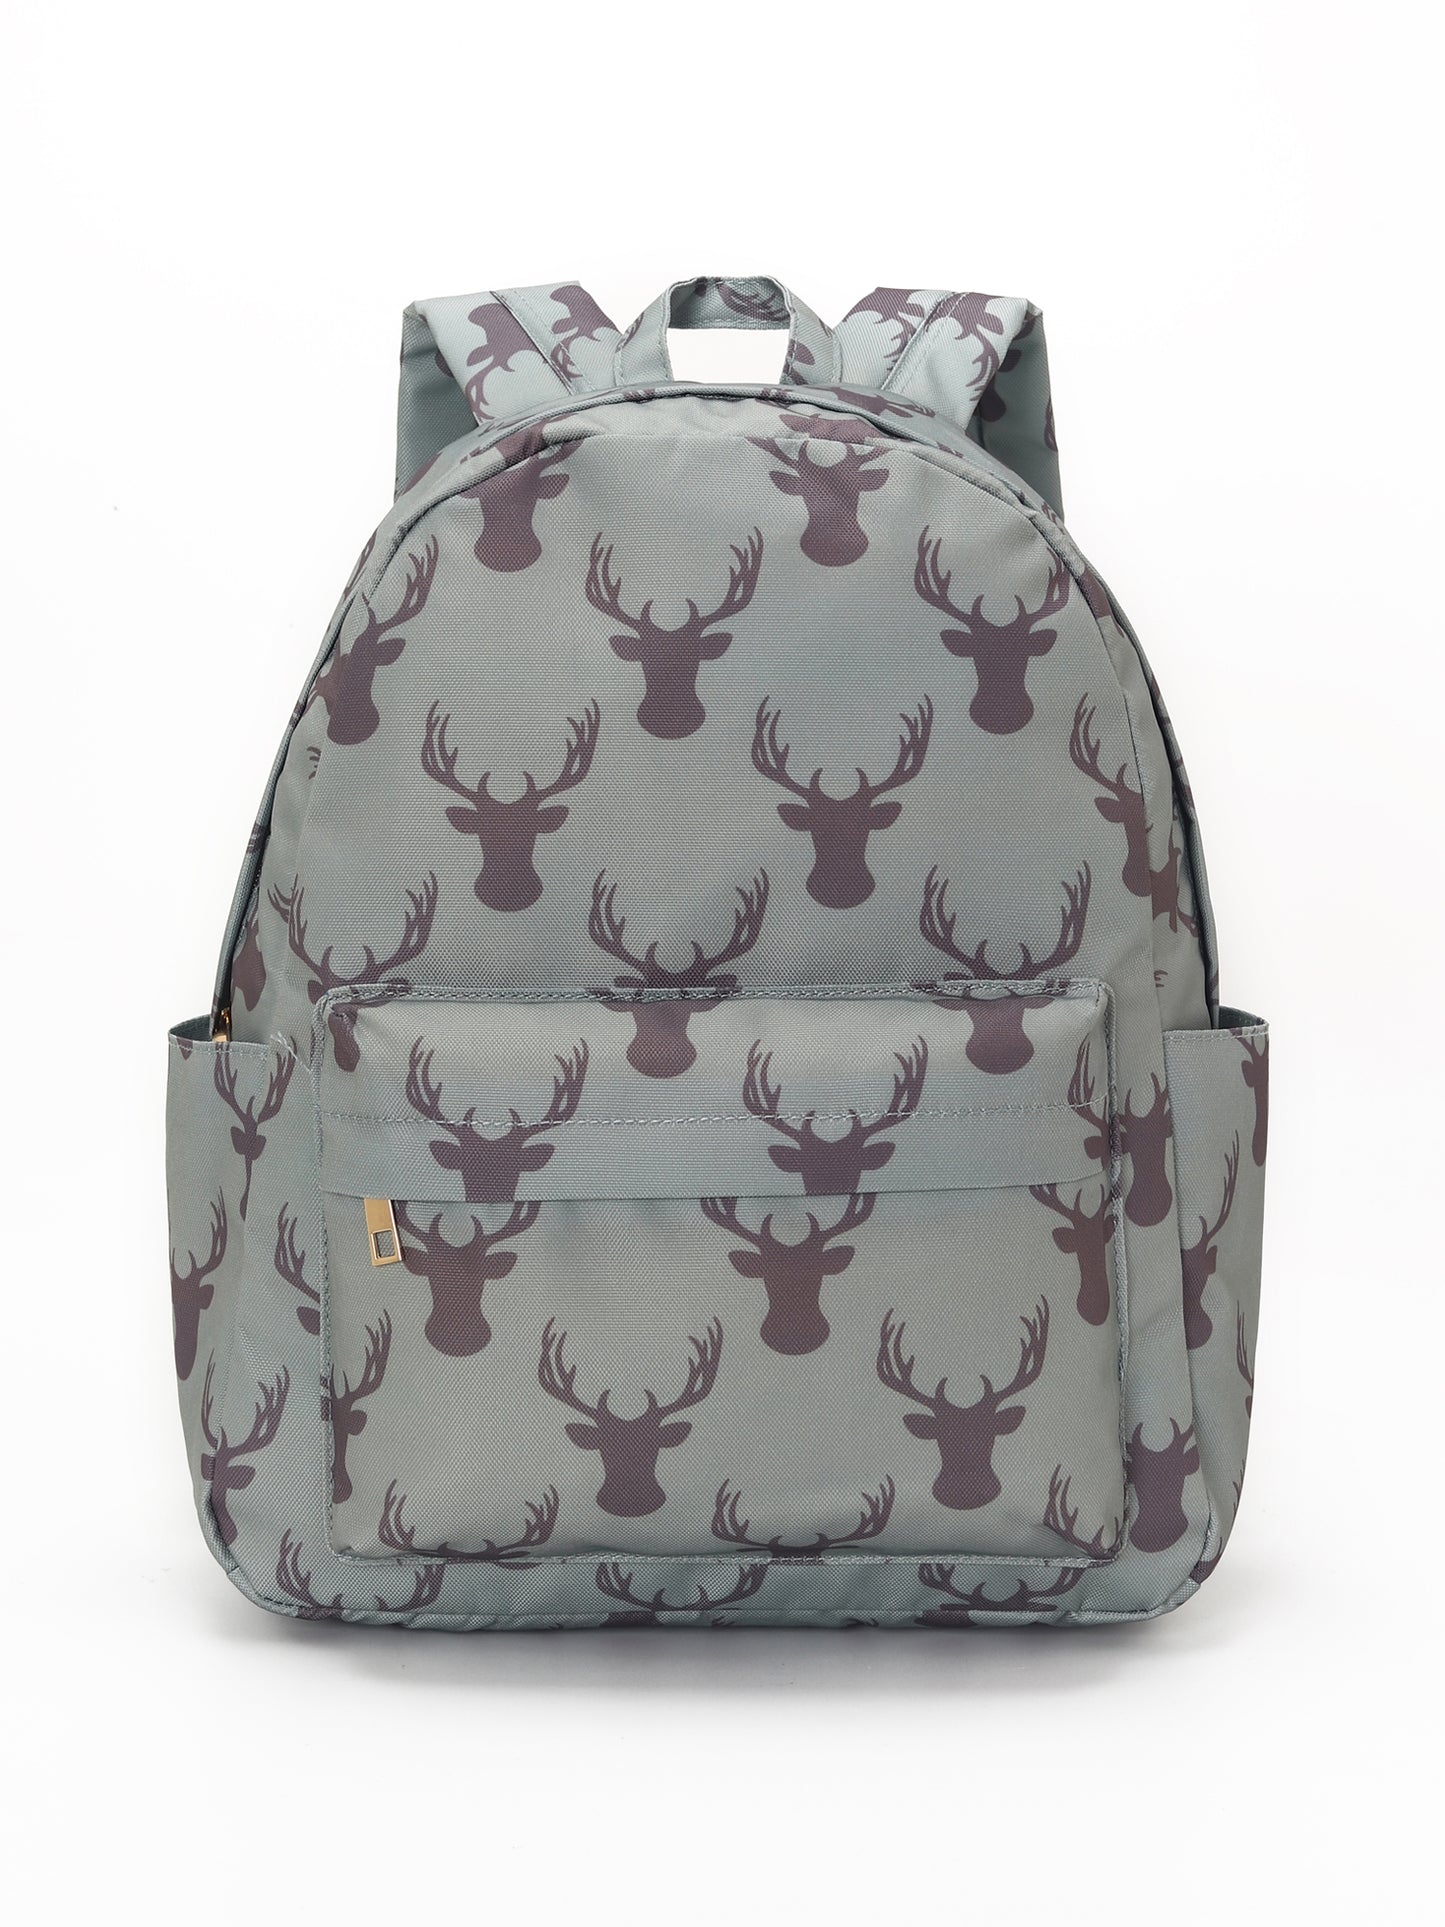 Deer Printed Kids Backpack